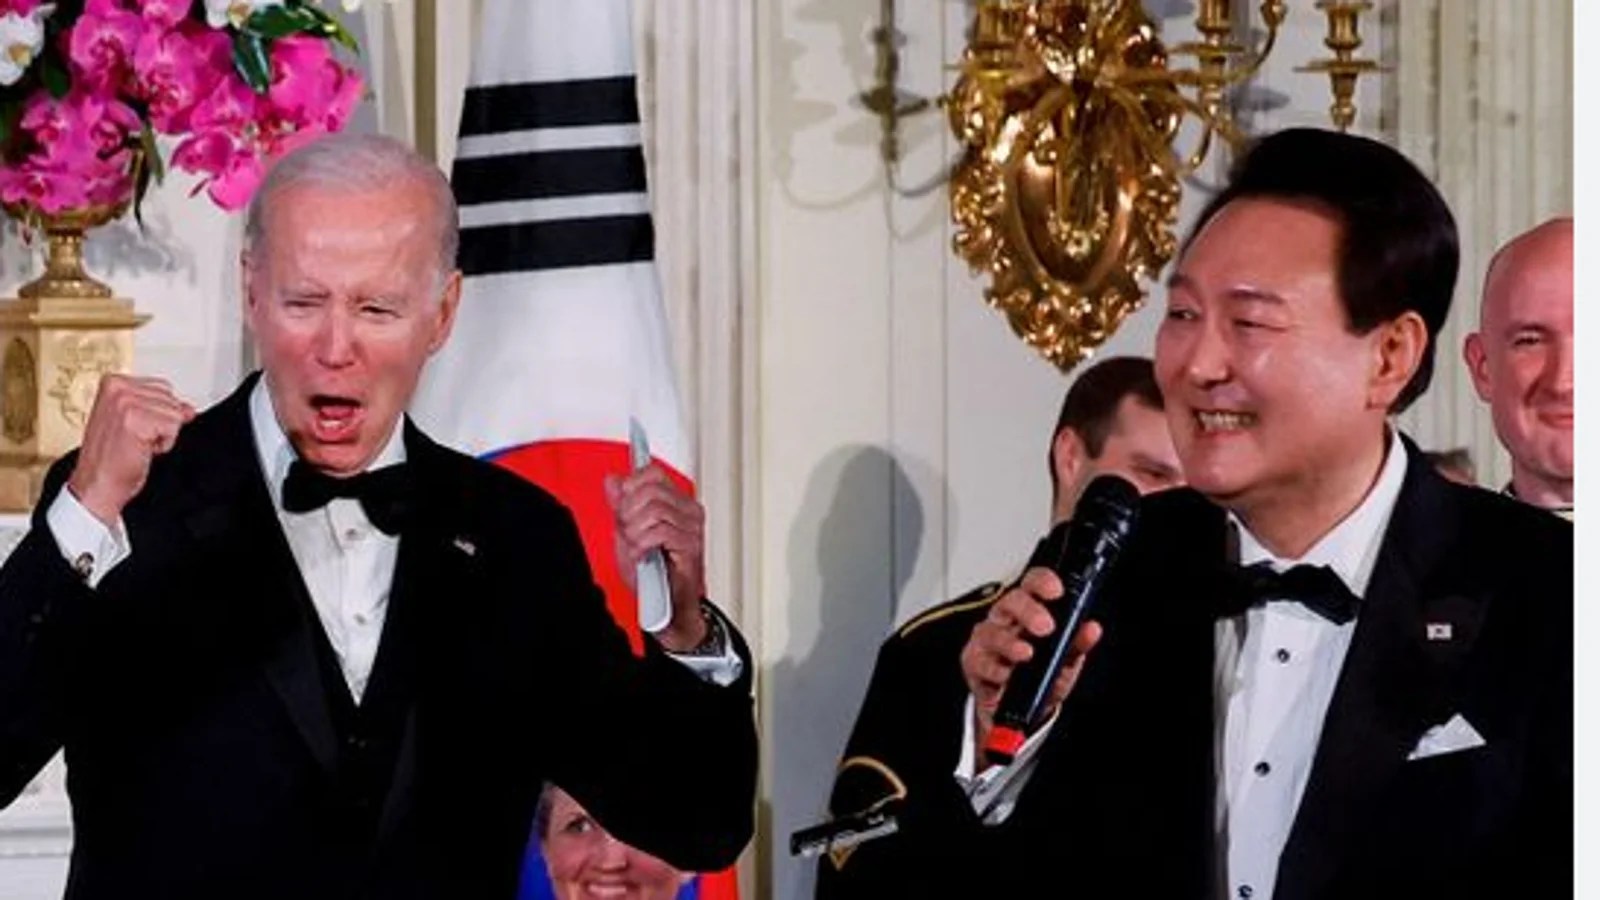 Biden alucina con insólita actuación del presidente de Corea del Sur cantando “American Pie” (VIDEO)